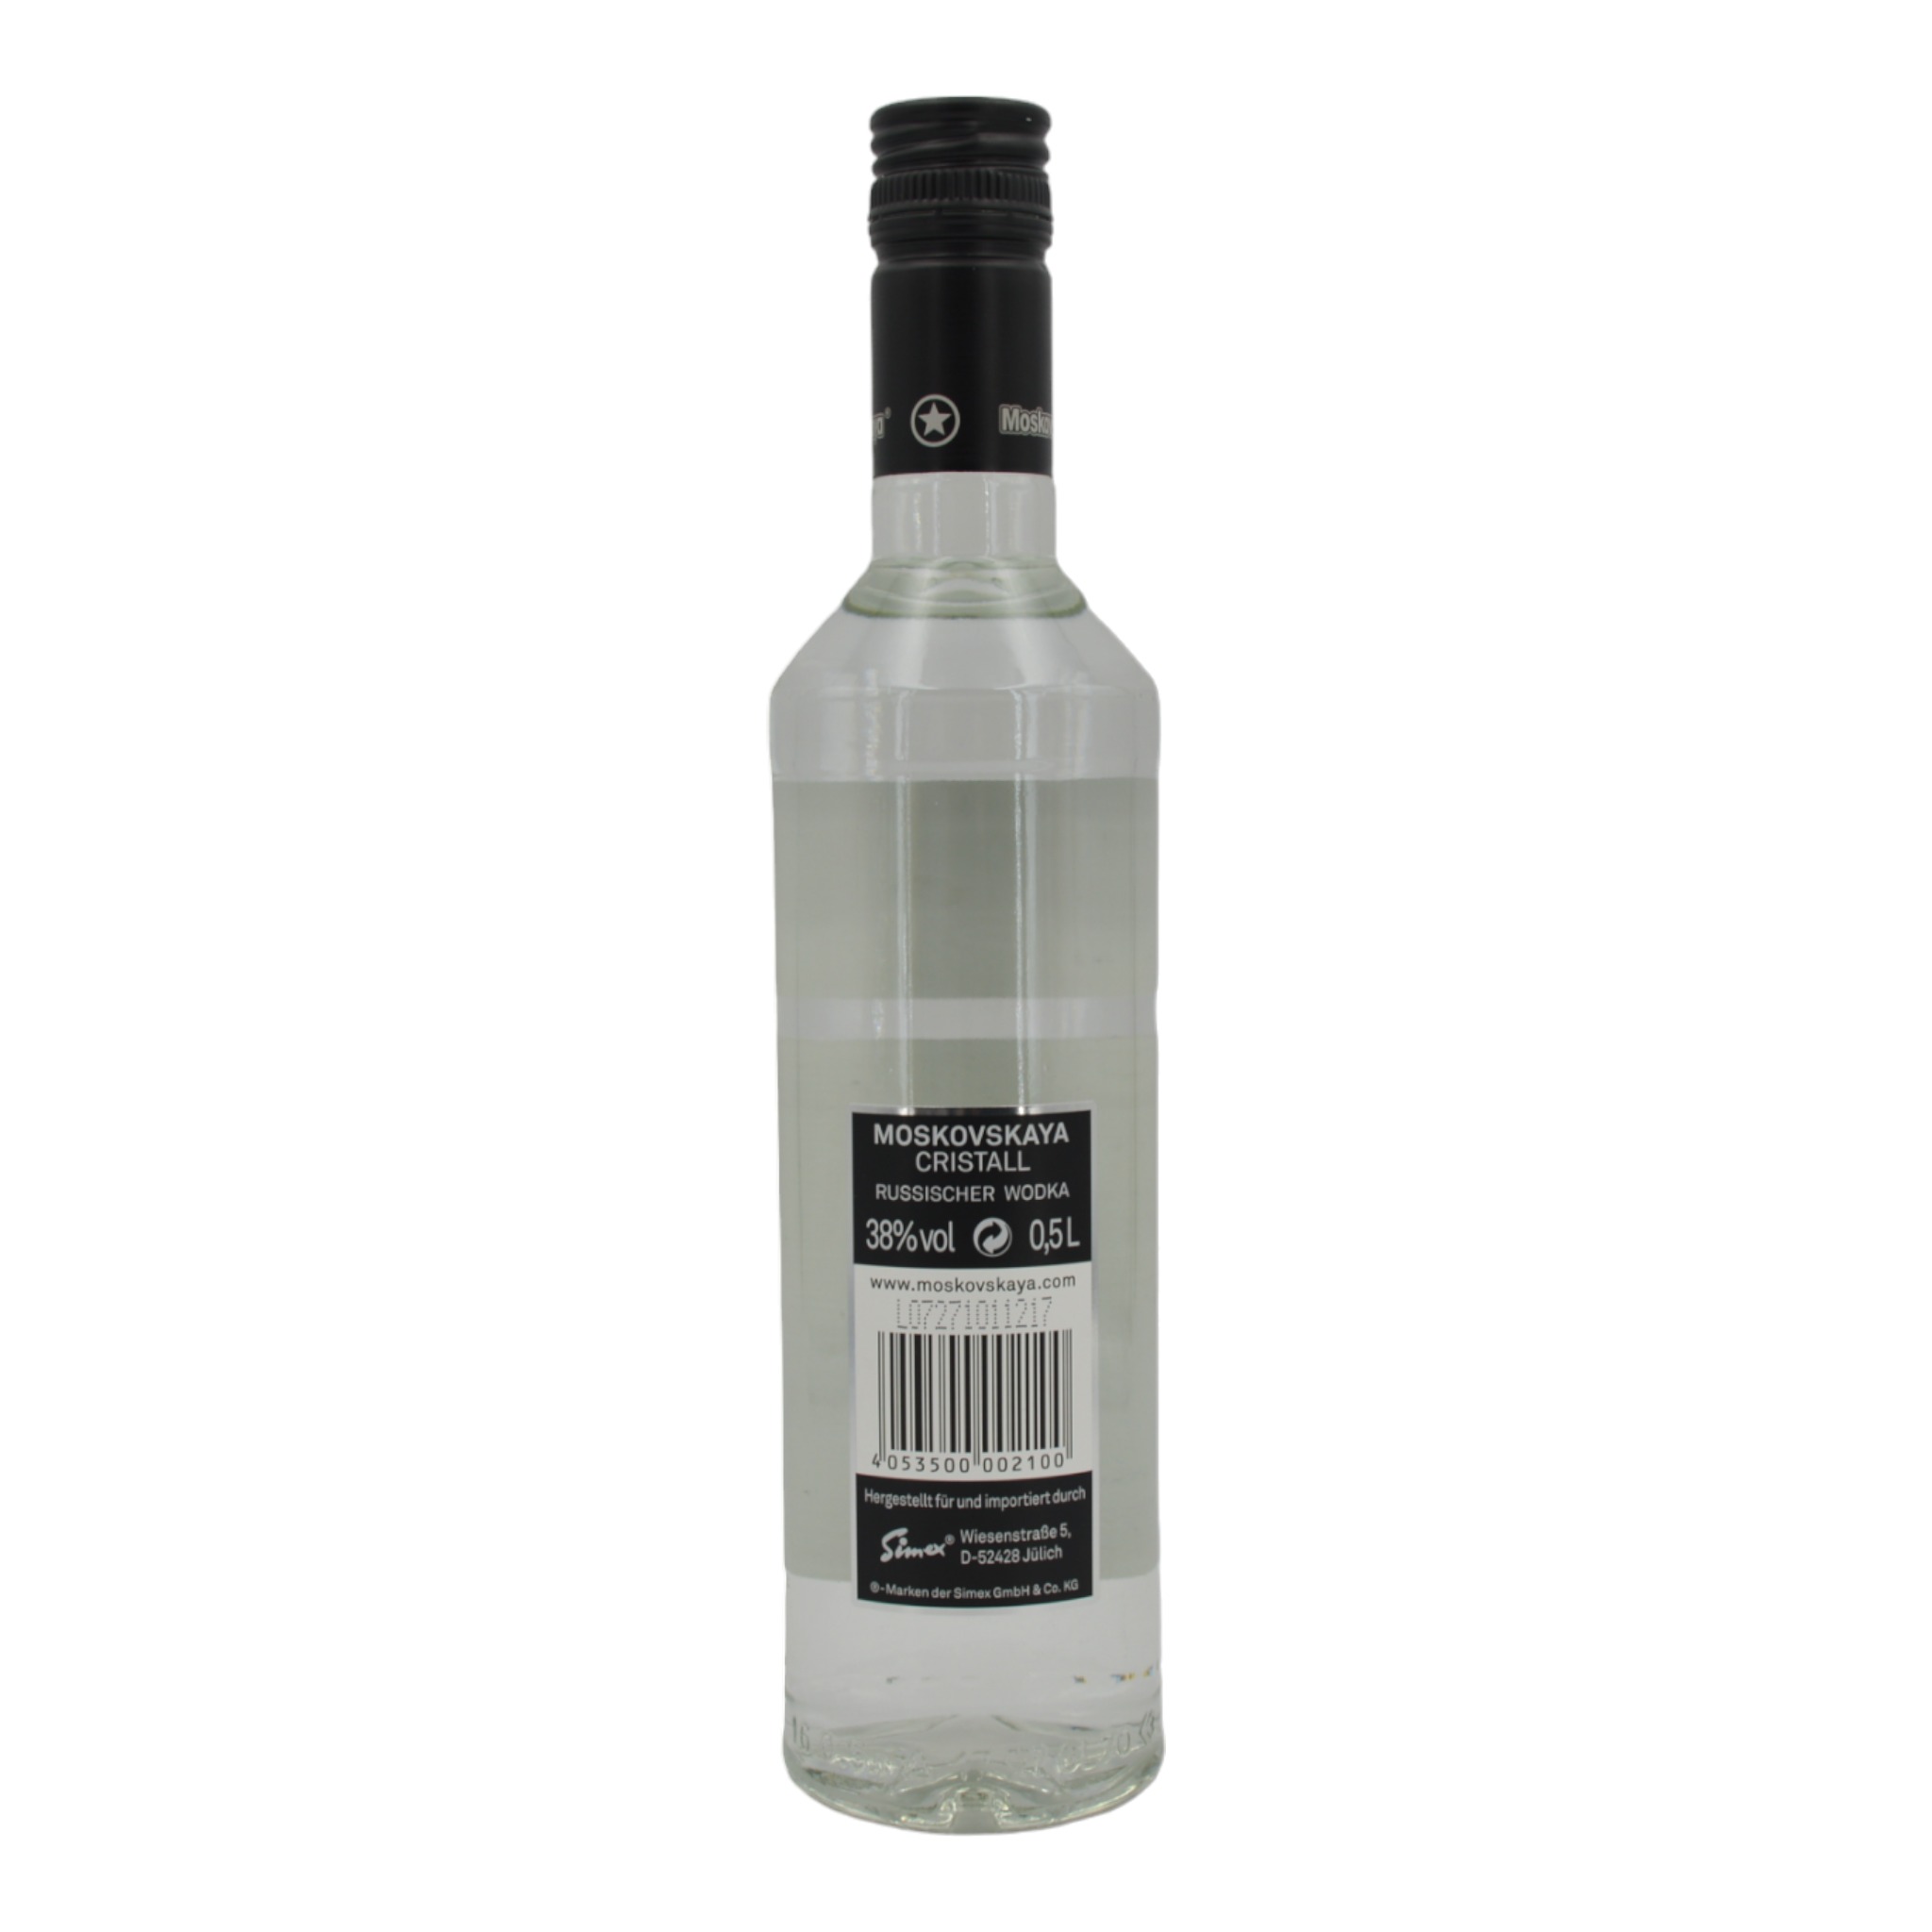 4053500002100Moskovskaya Cristall Superior Vodka b - Weinhaus-Buecker